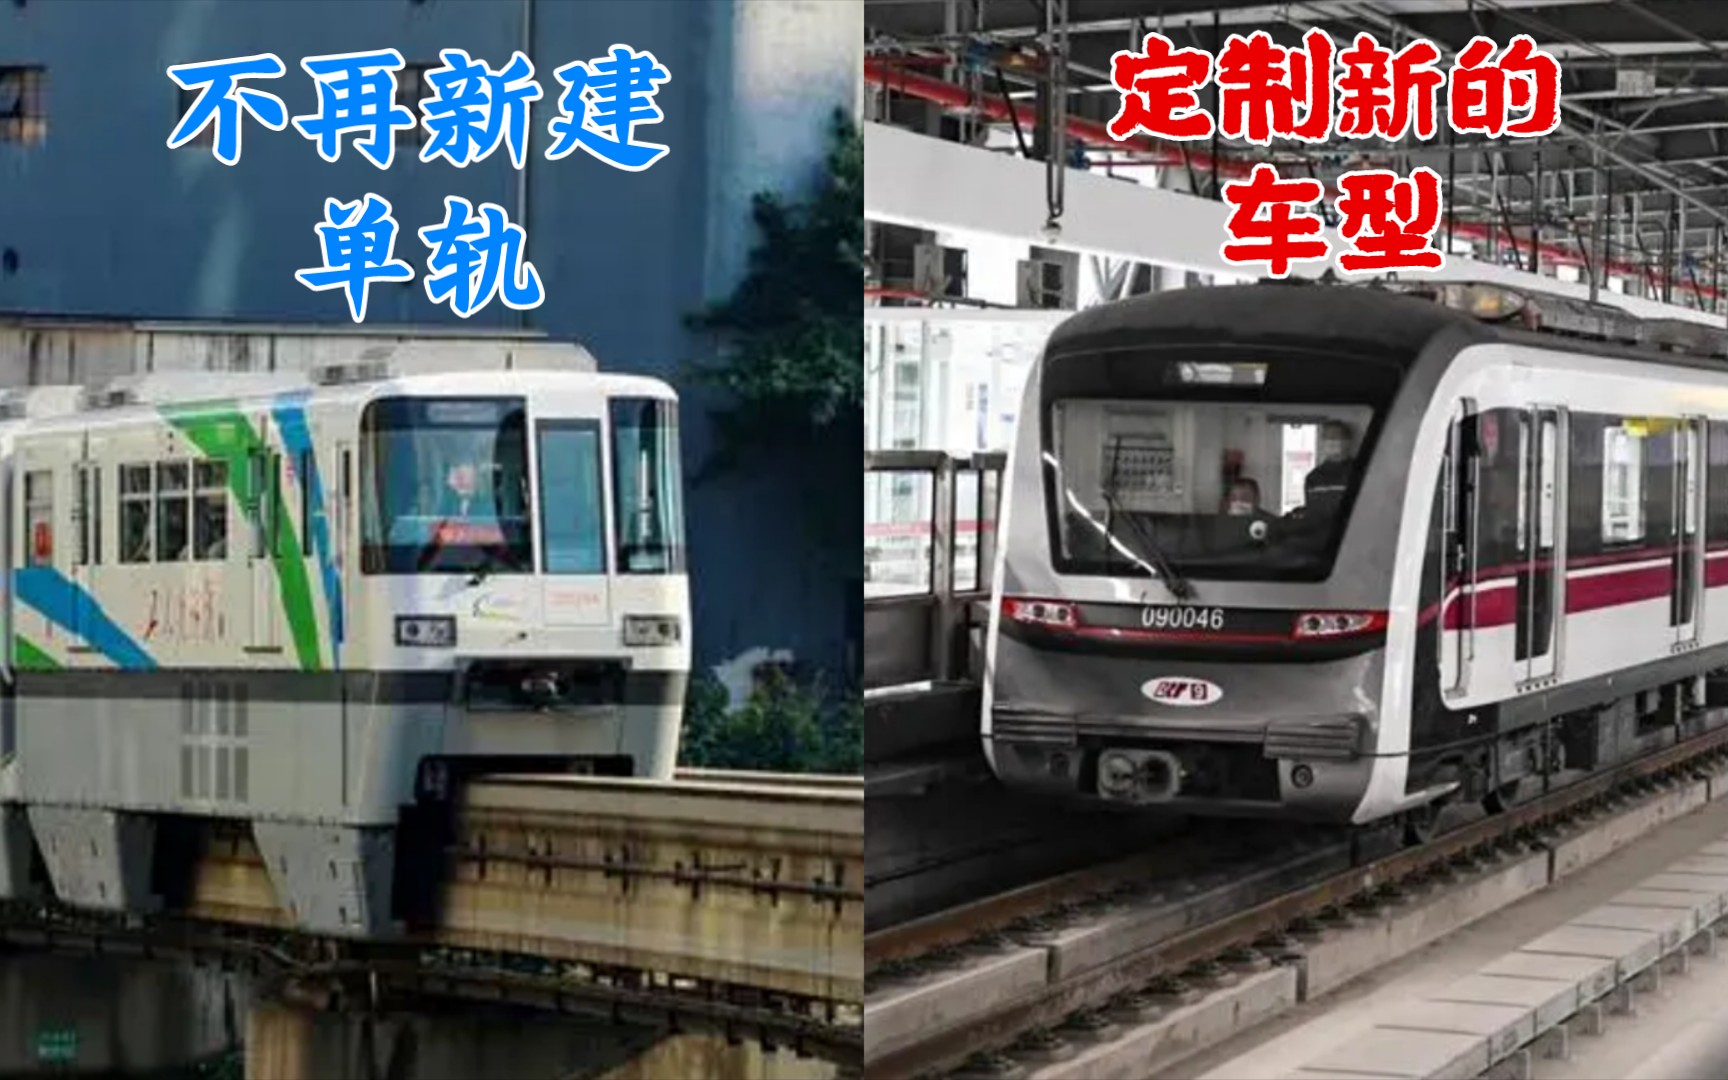 为什么重庆不再新建单轨了